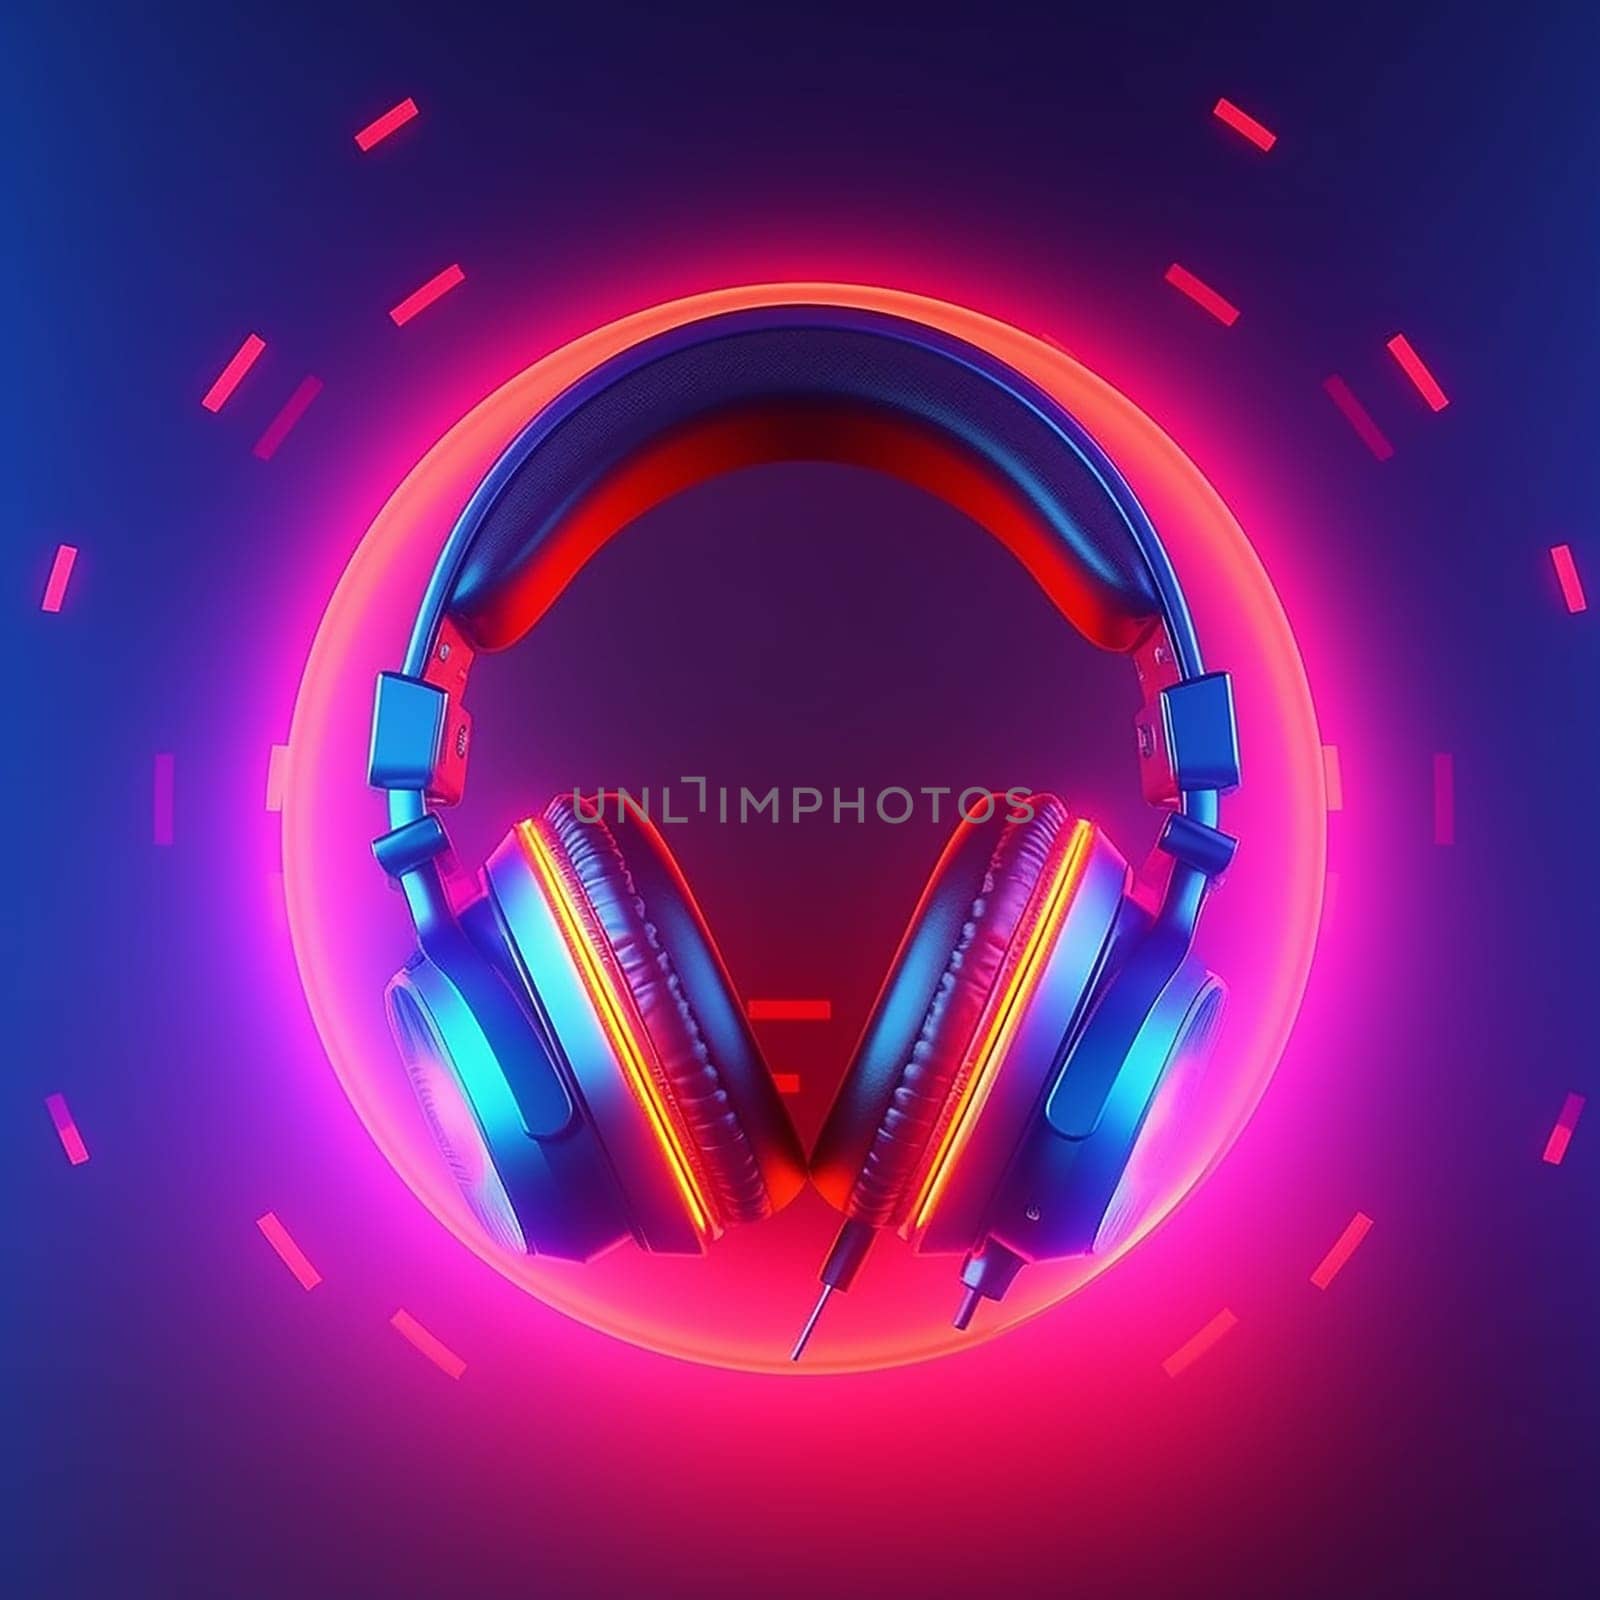 Vibrant neon-lit headphones against a blue and purple gradient backdrop